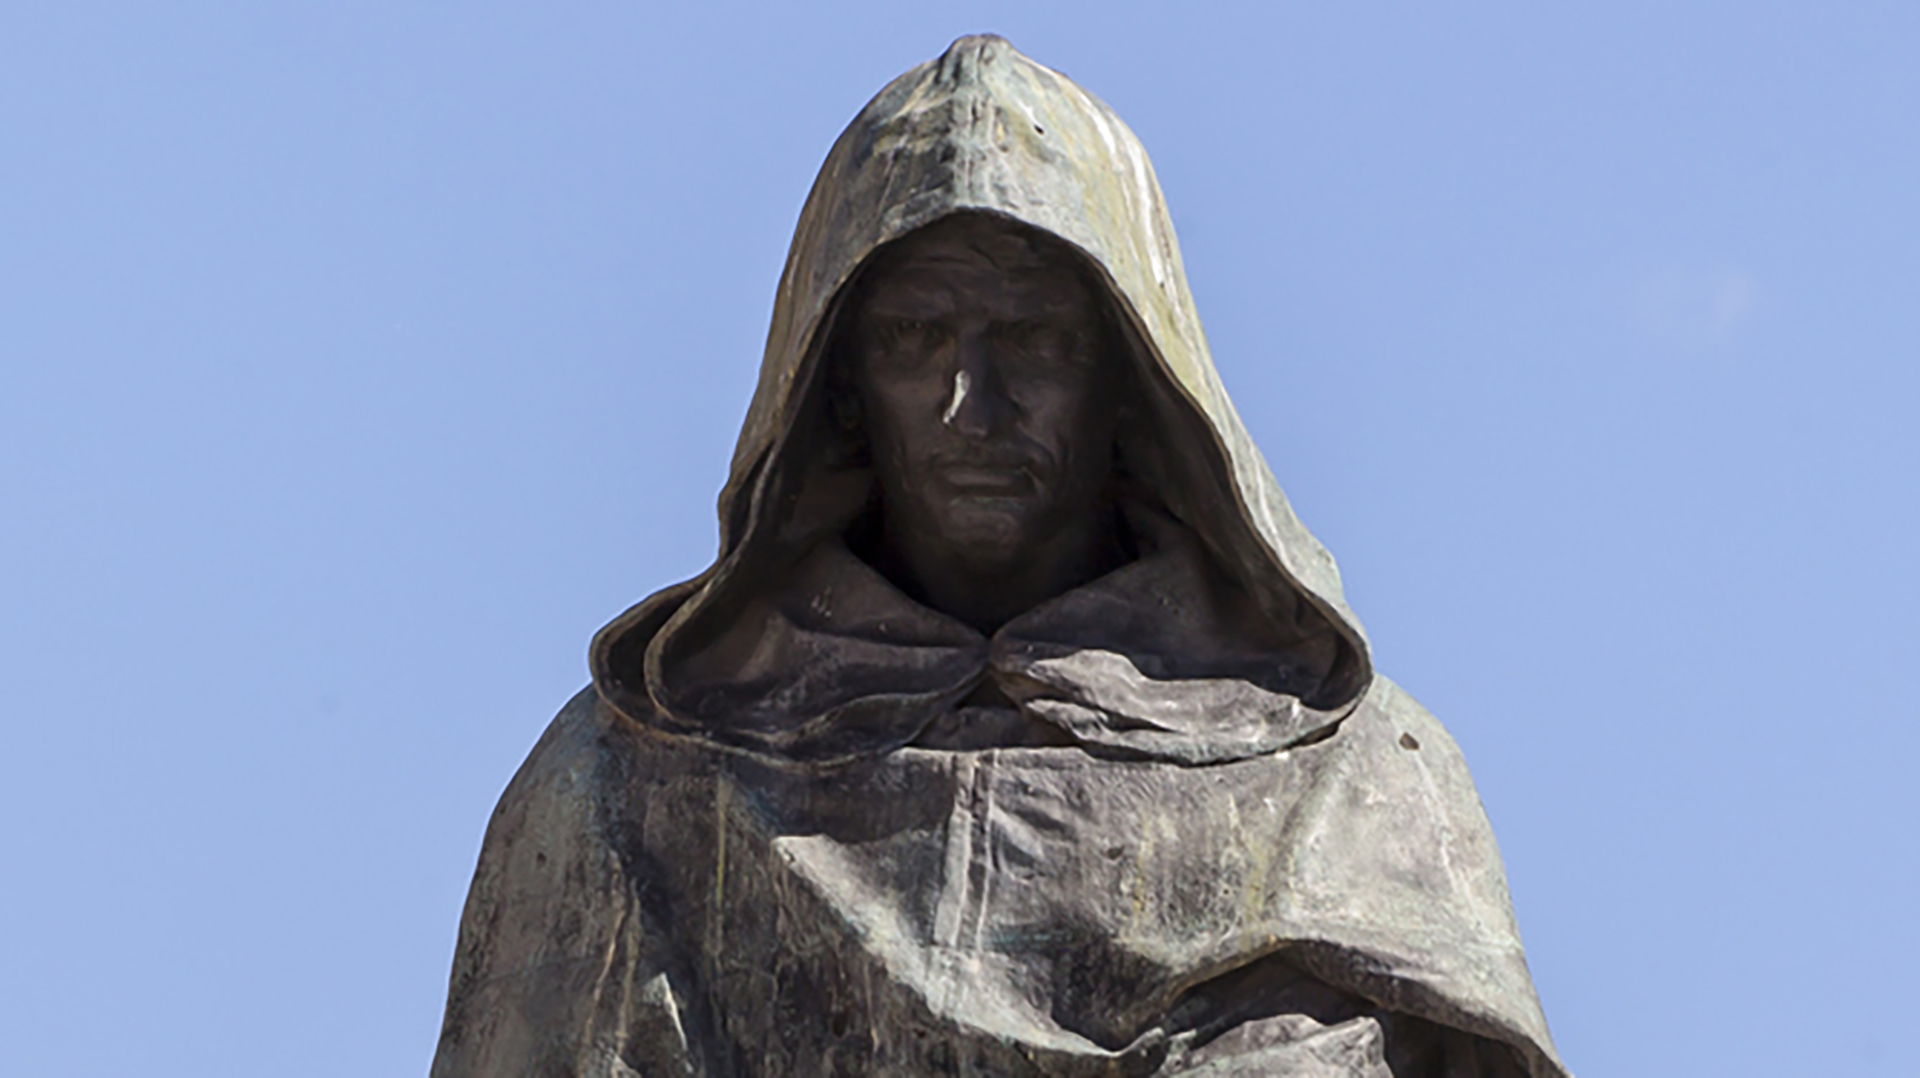 Una escultura en el Campo de'Fiori de Roma recuerda el lugar donde fue ejecutado en la hoguera Giordano Bruno, el monje que enseñaba cosmología (Getty Images)